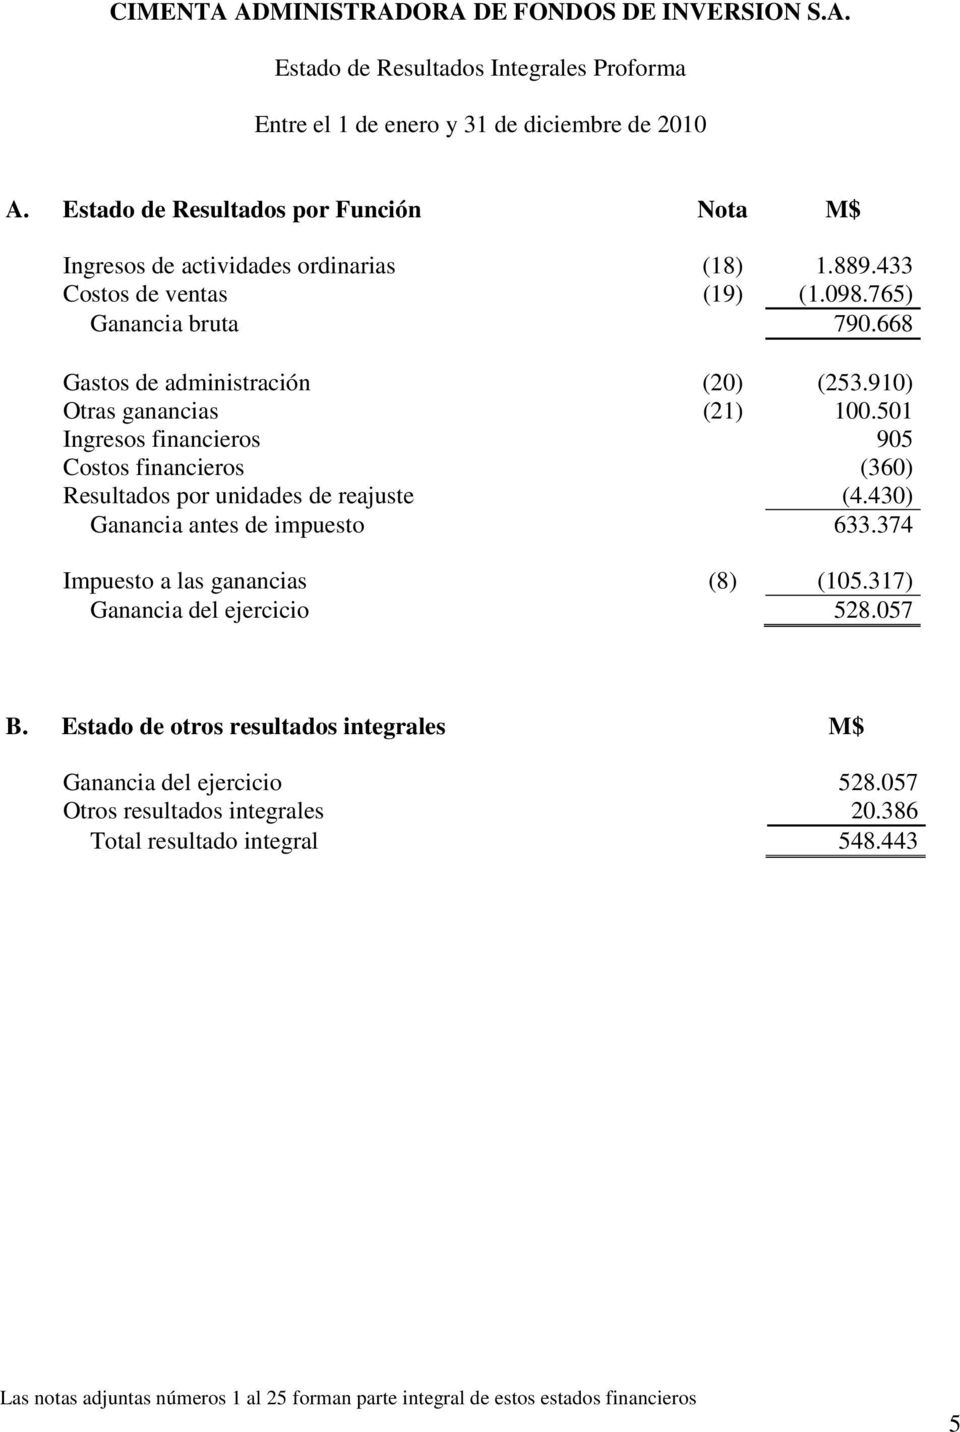 501 Ingresos financieros 905 Costos financieros (360) Resultados por unidades de reajuste (4.430) Ganancia antes de impuesto 633.374 Impuesto a las ganancias (8) (105.